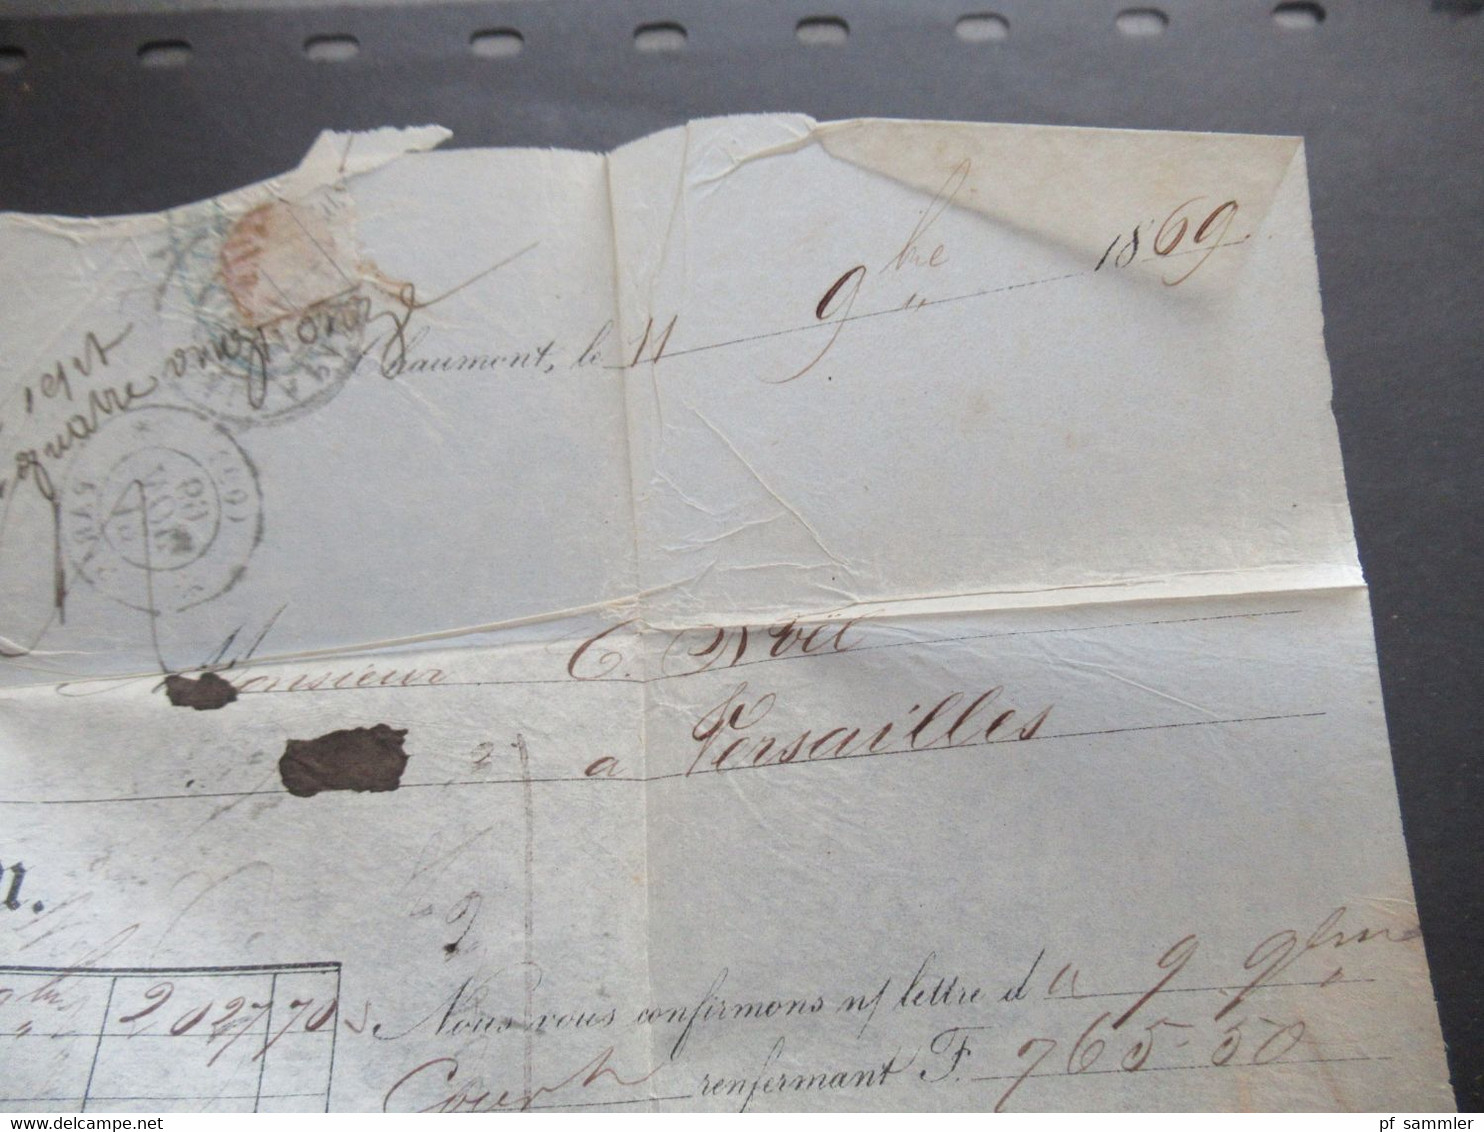 Frankreich 1869 Napoleon Nr.28 Rautenstempel Nr.978 nach Versailles gedruckter Faltbrief Roy & Donnot Chaumont Banque